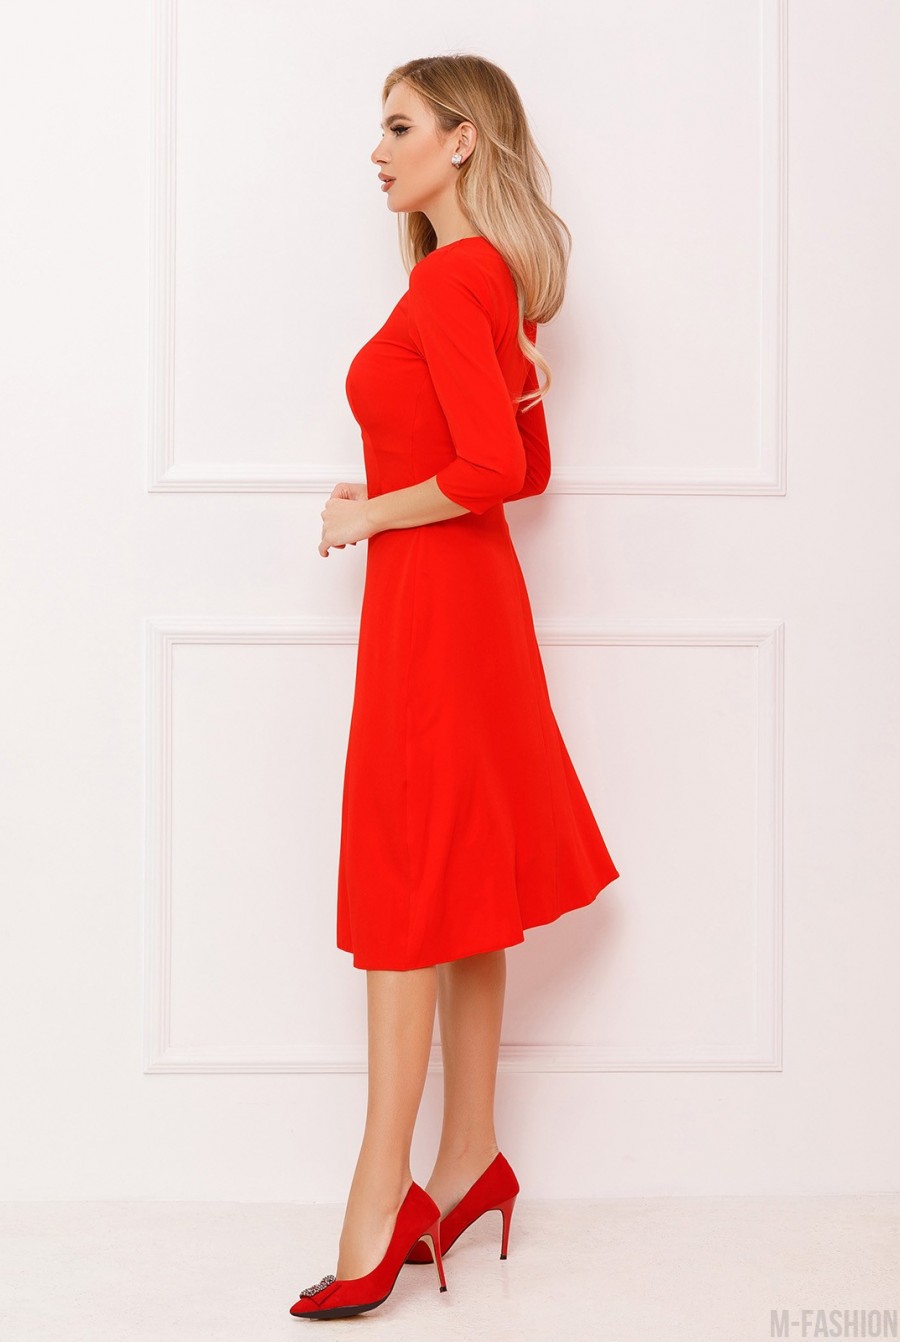 Классическое платье красного цвета - Фото 2